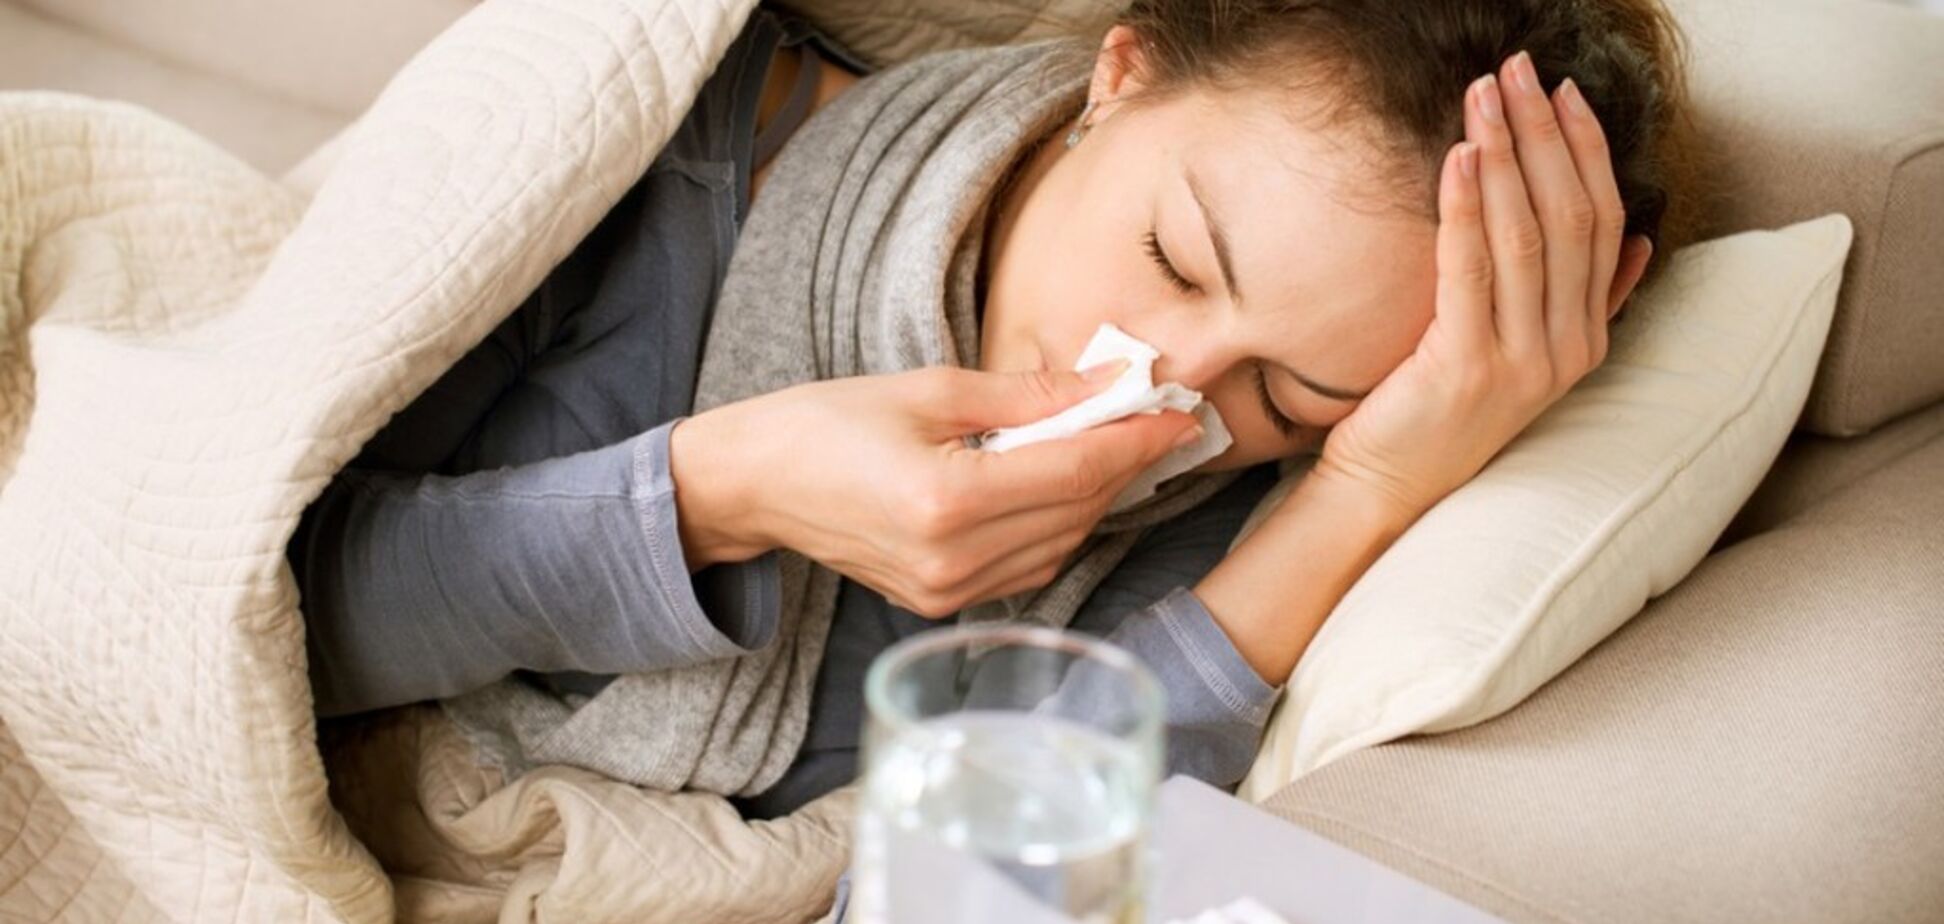 Епідемія грипу в Україні: лікар назвав небезпечні симптоми